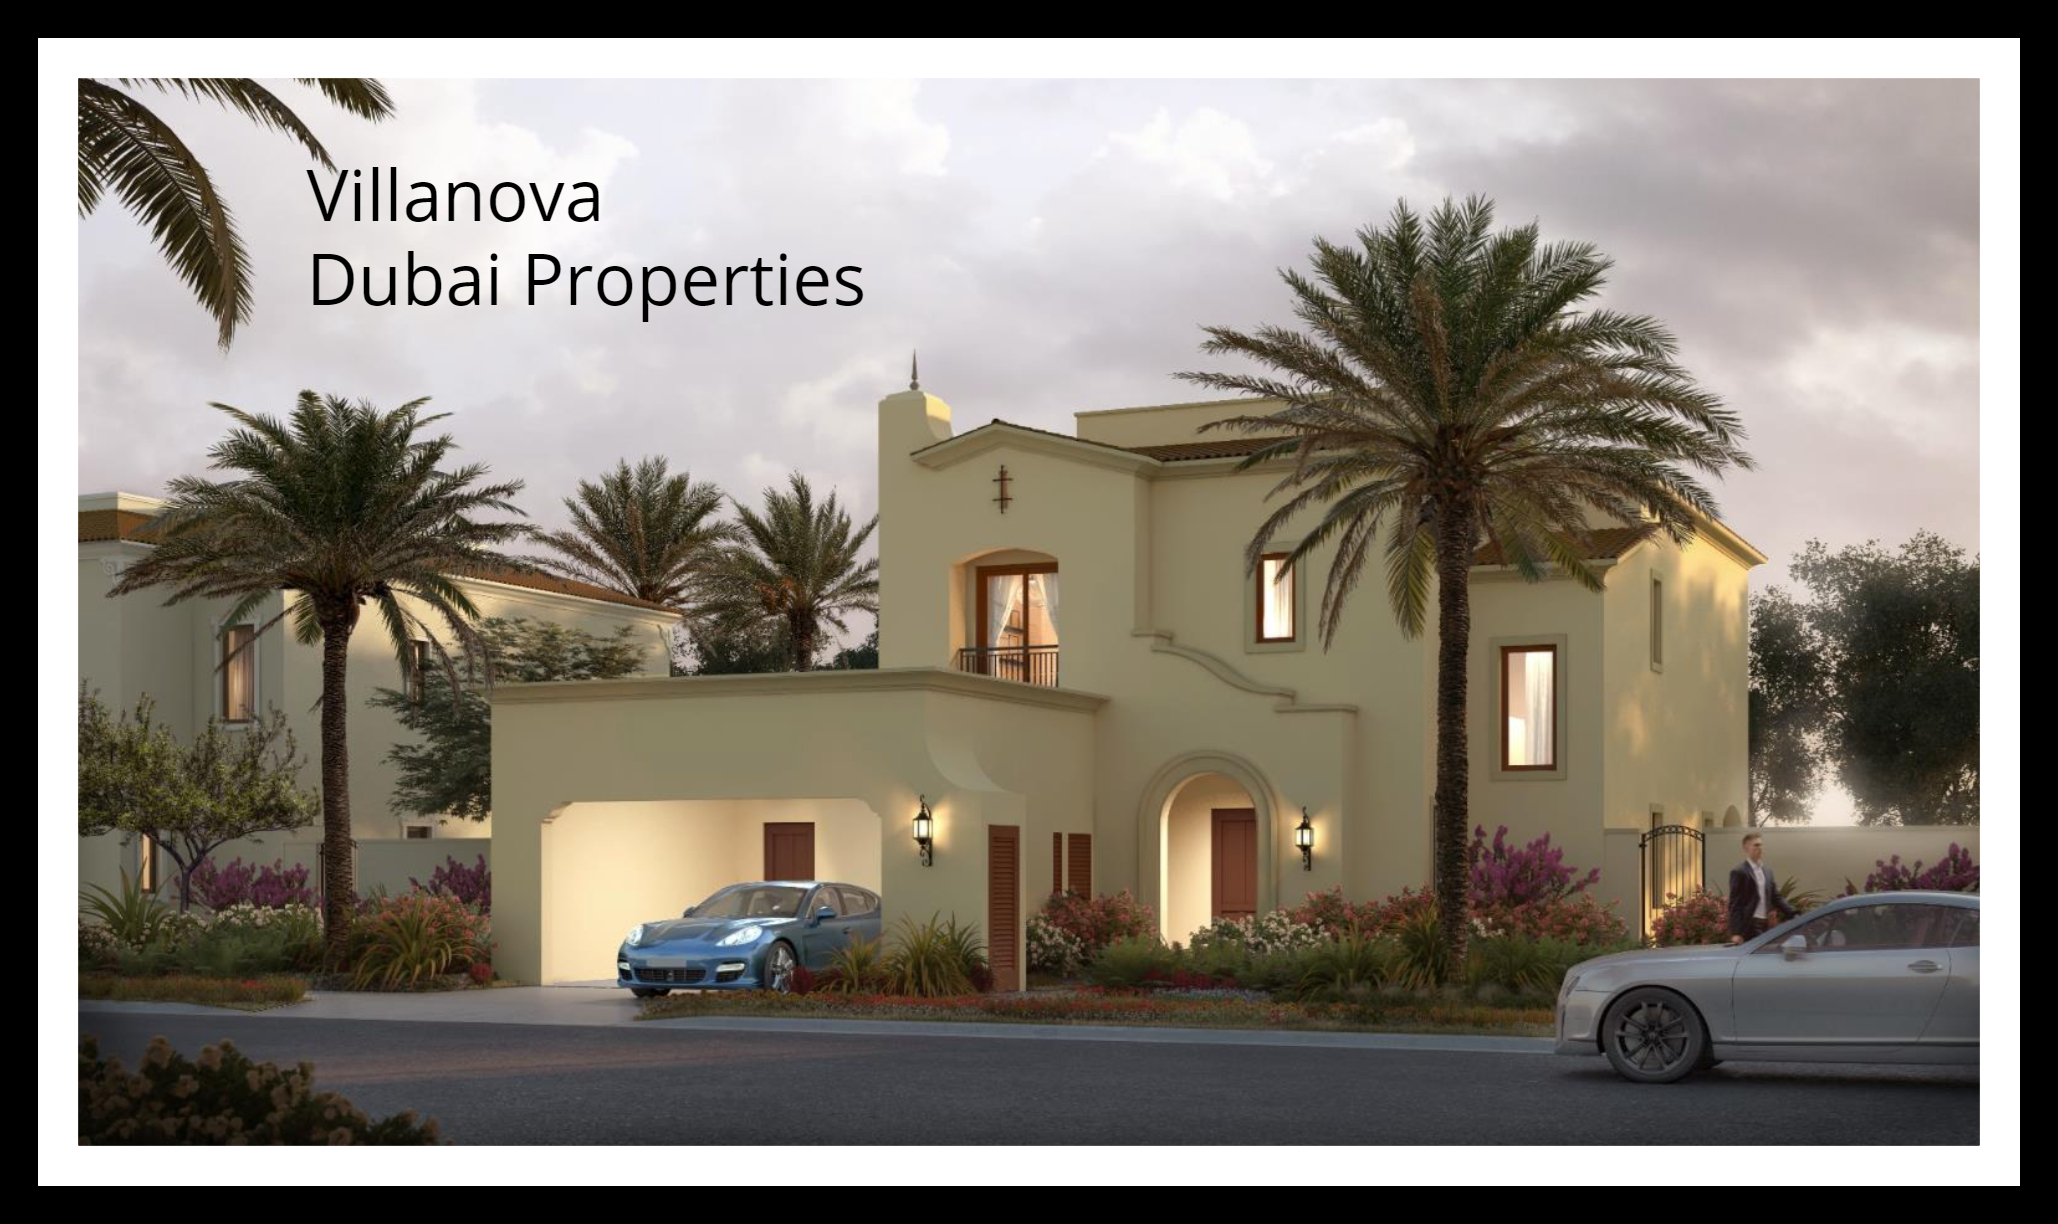 Villanova Dubai Properties